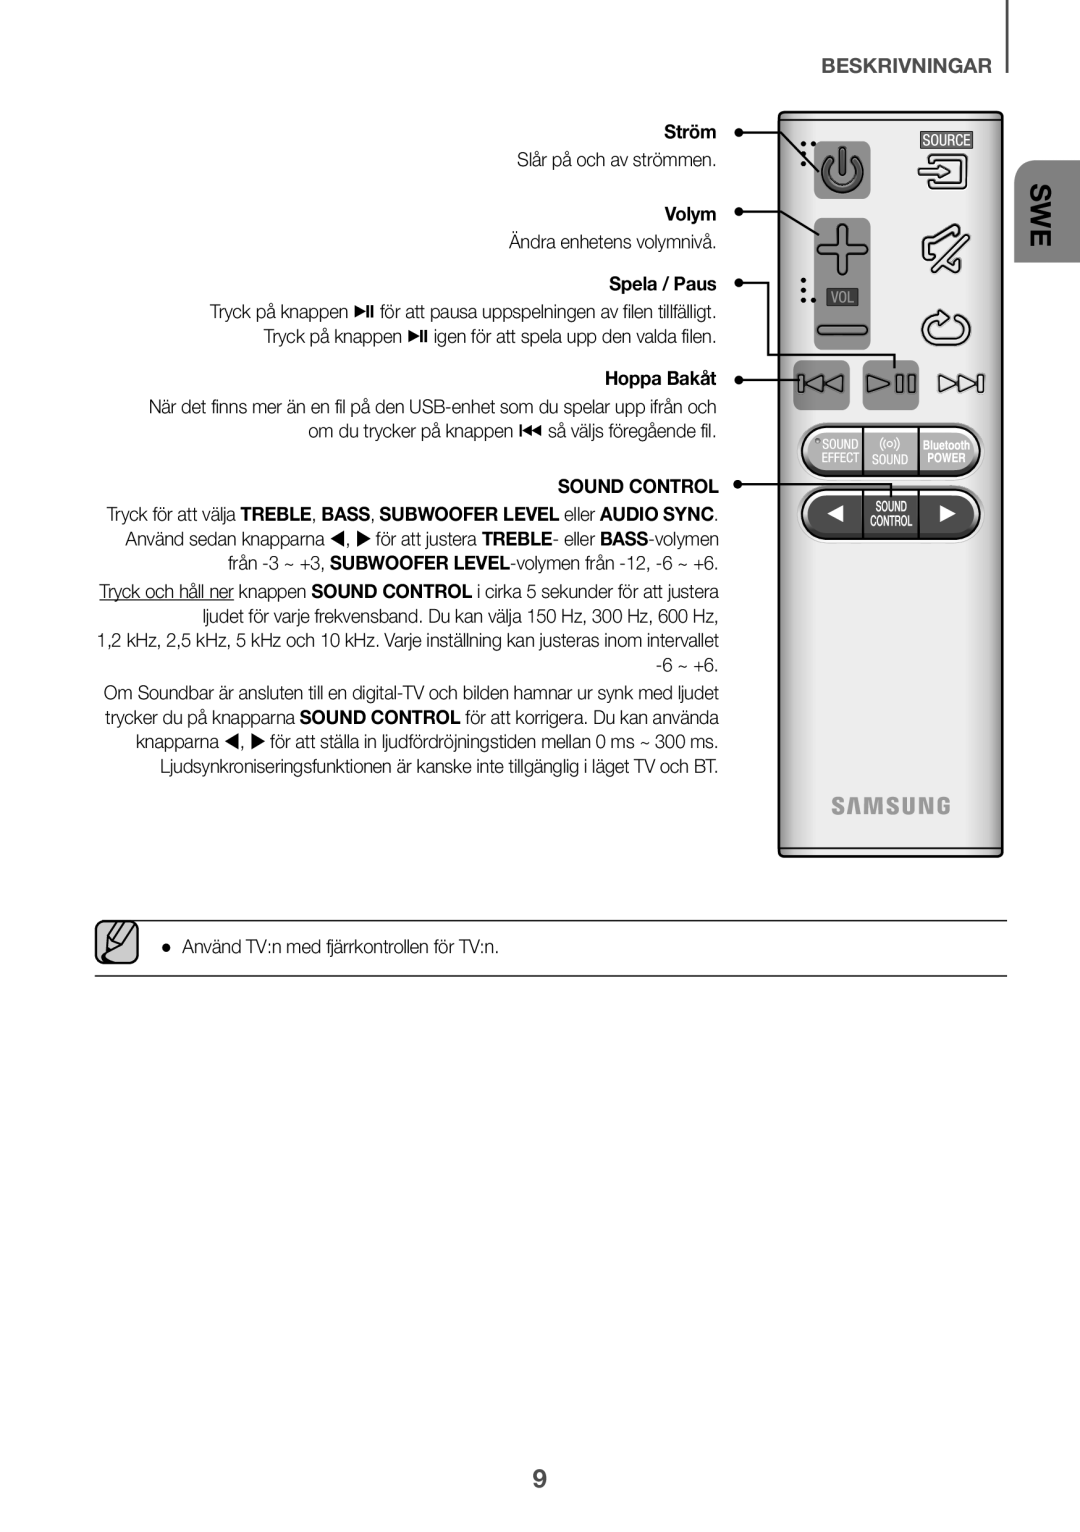 Samsung HW-K661/XE, HW-K651/EN, HW-K650/EN beskrivningar, Ström, Tryck på knappen pigen för att spela upp den valda filen 